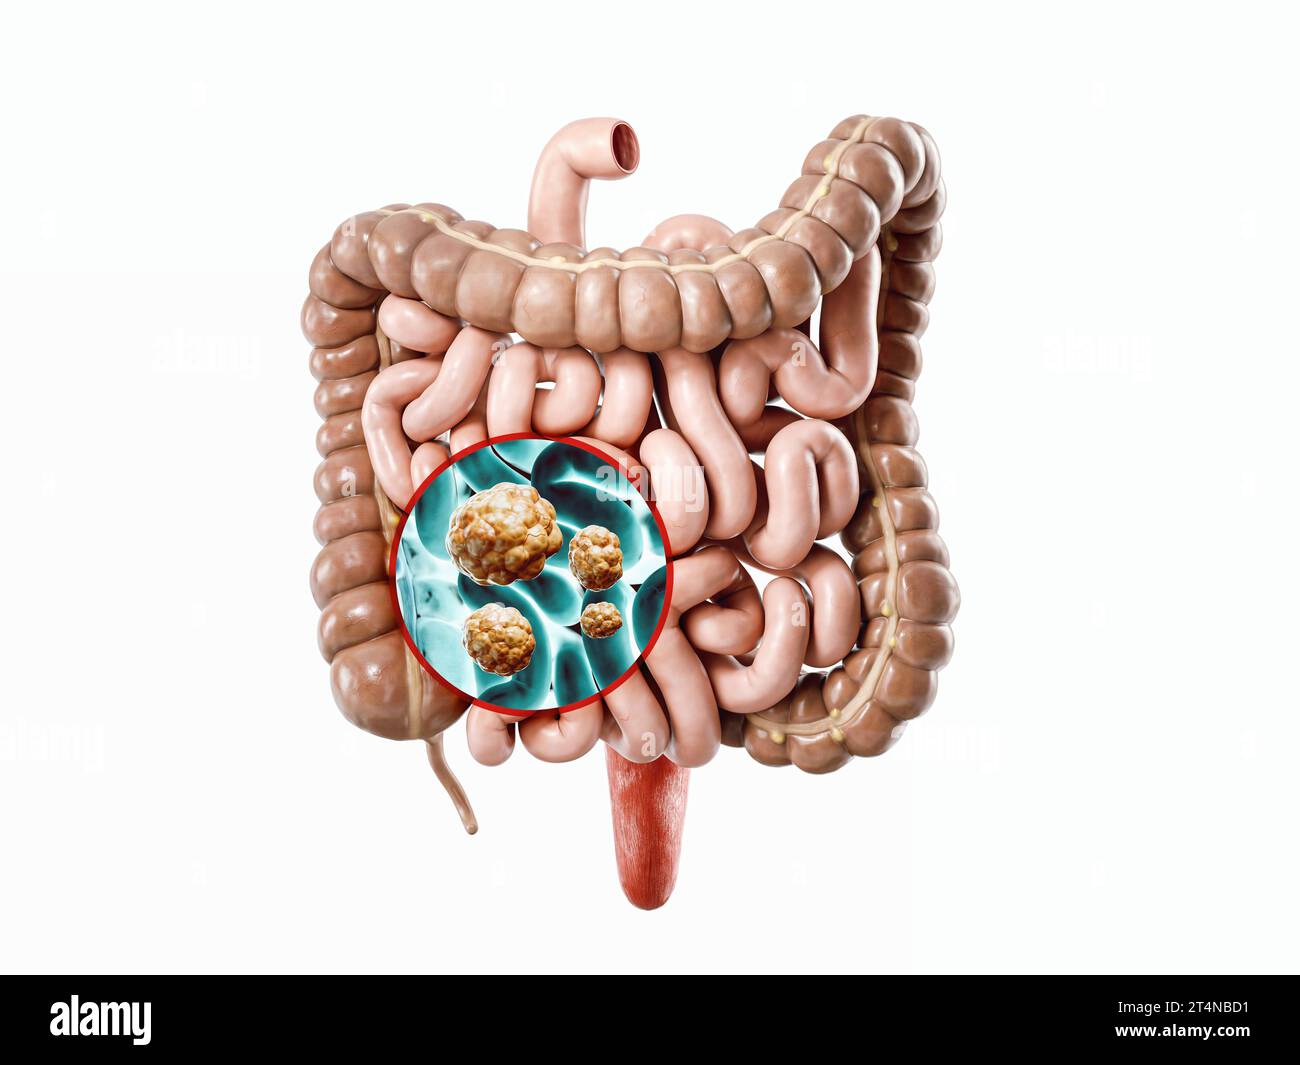 Anatomie de l'illustration réaliste 3d de l'organe interne humain - intestin. Radiographie de l'intestin humain pour cancer Banque D'Images